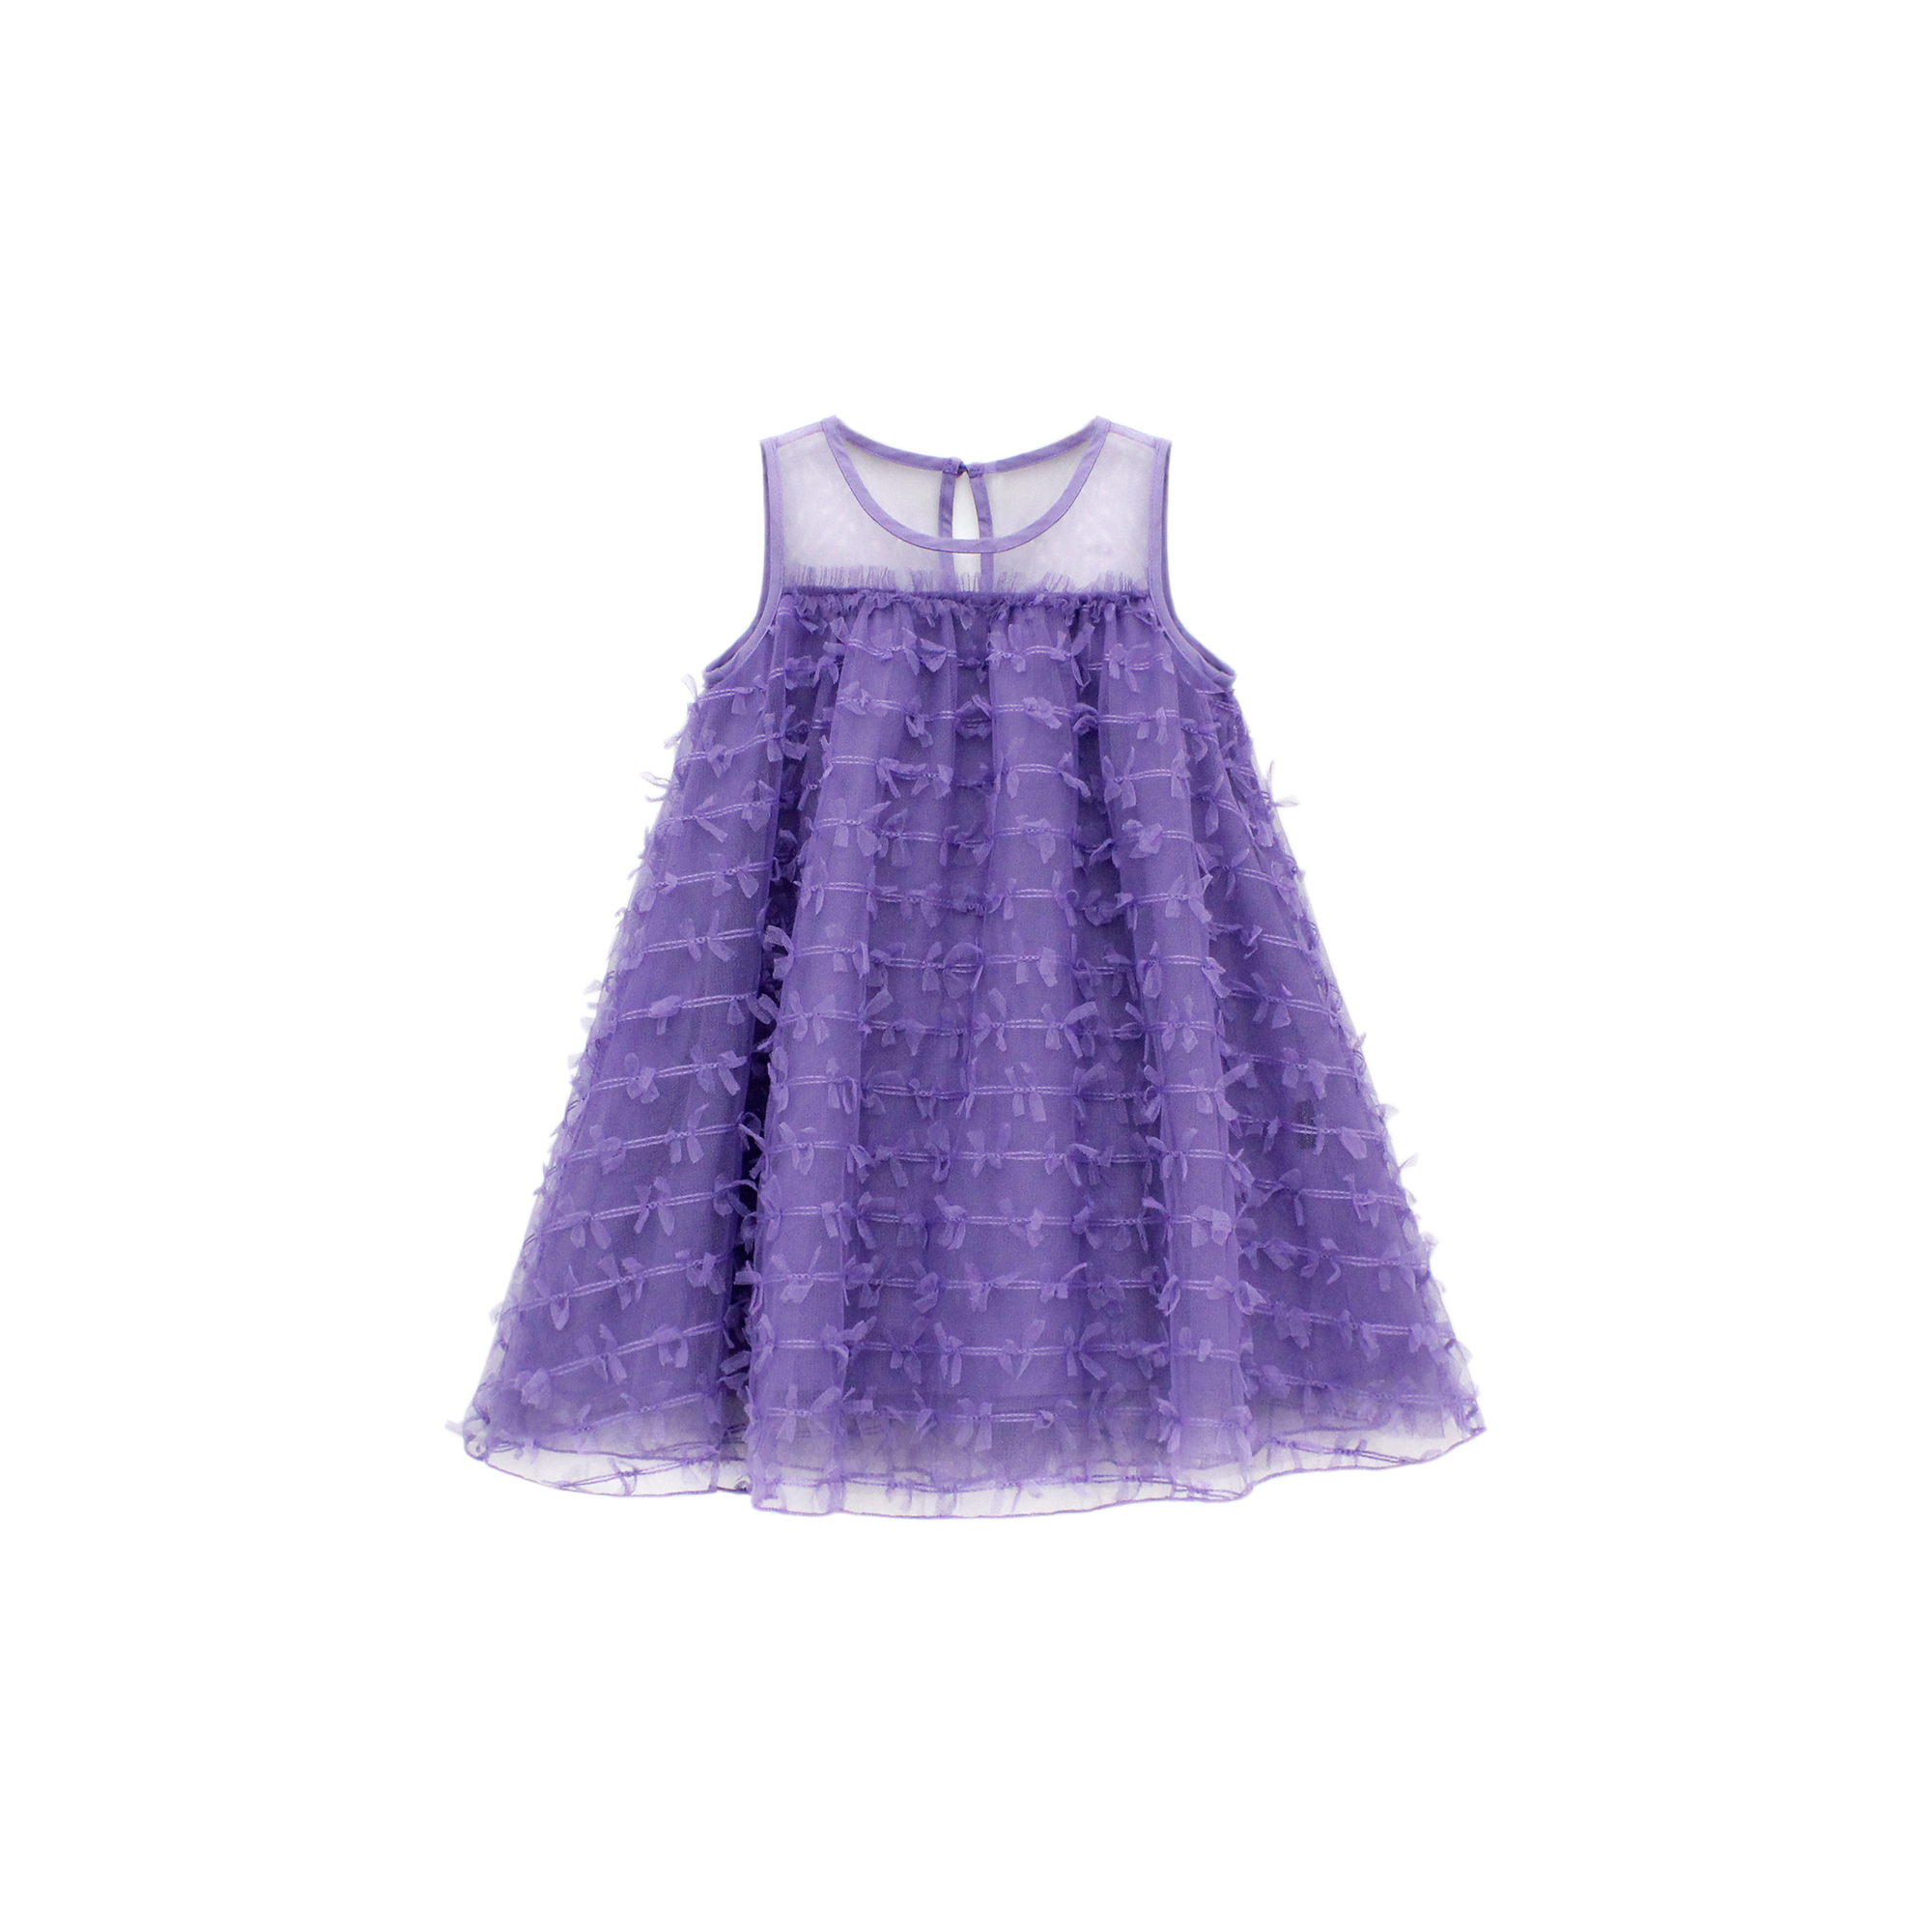 紫色连衣裙女人素材图片下载-素材编号04952296-素材天下图库